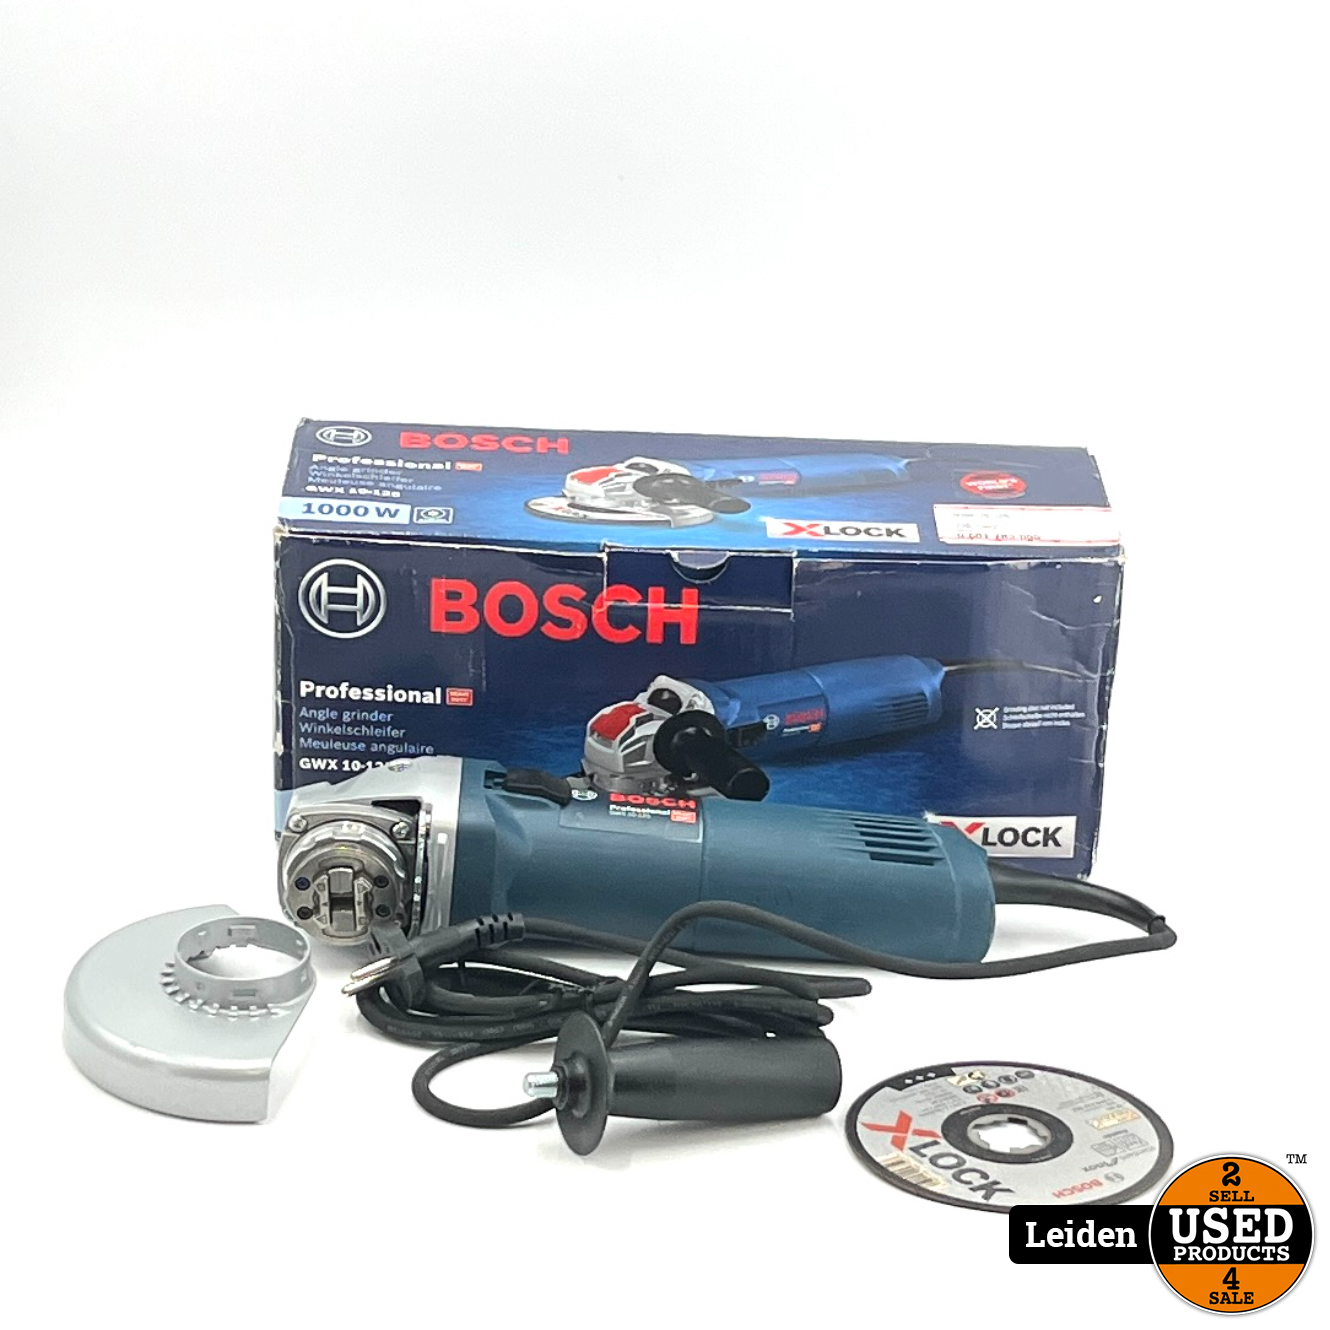 Stralend Donder opraken Bosch Professional X-LOCK GWX 10-125 Haakse Slijper - Used Products Leiden